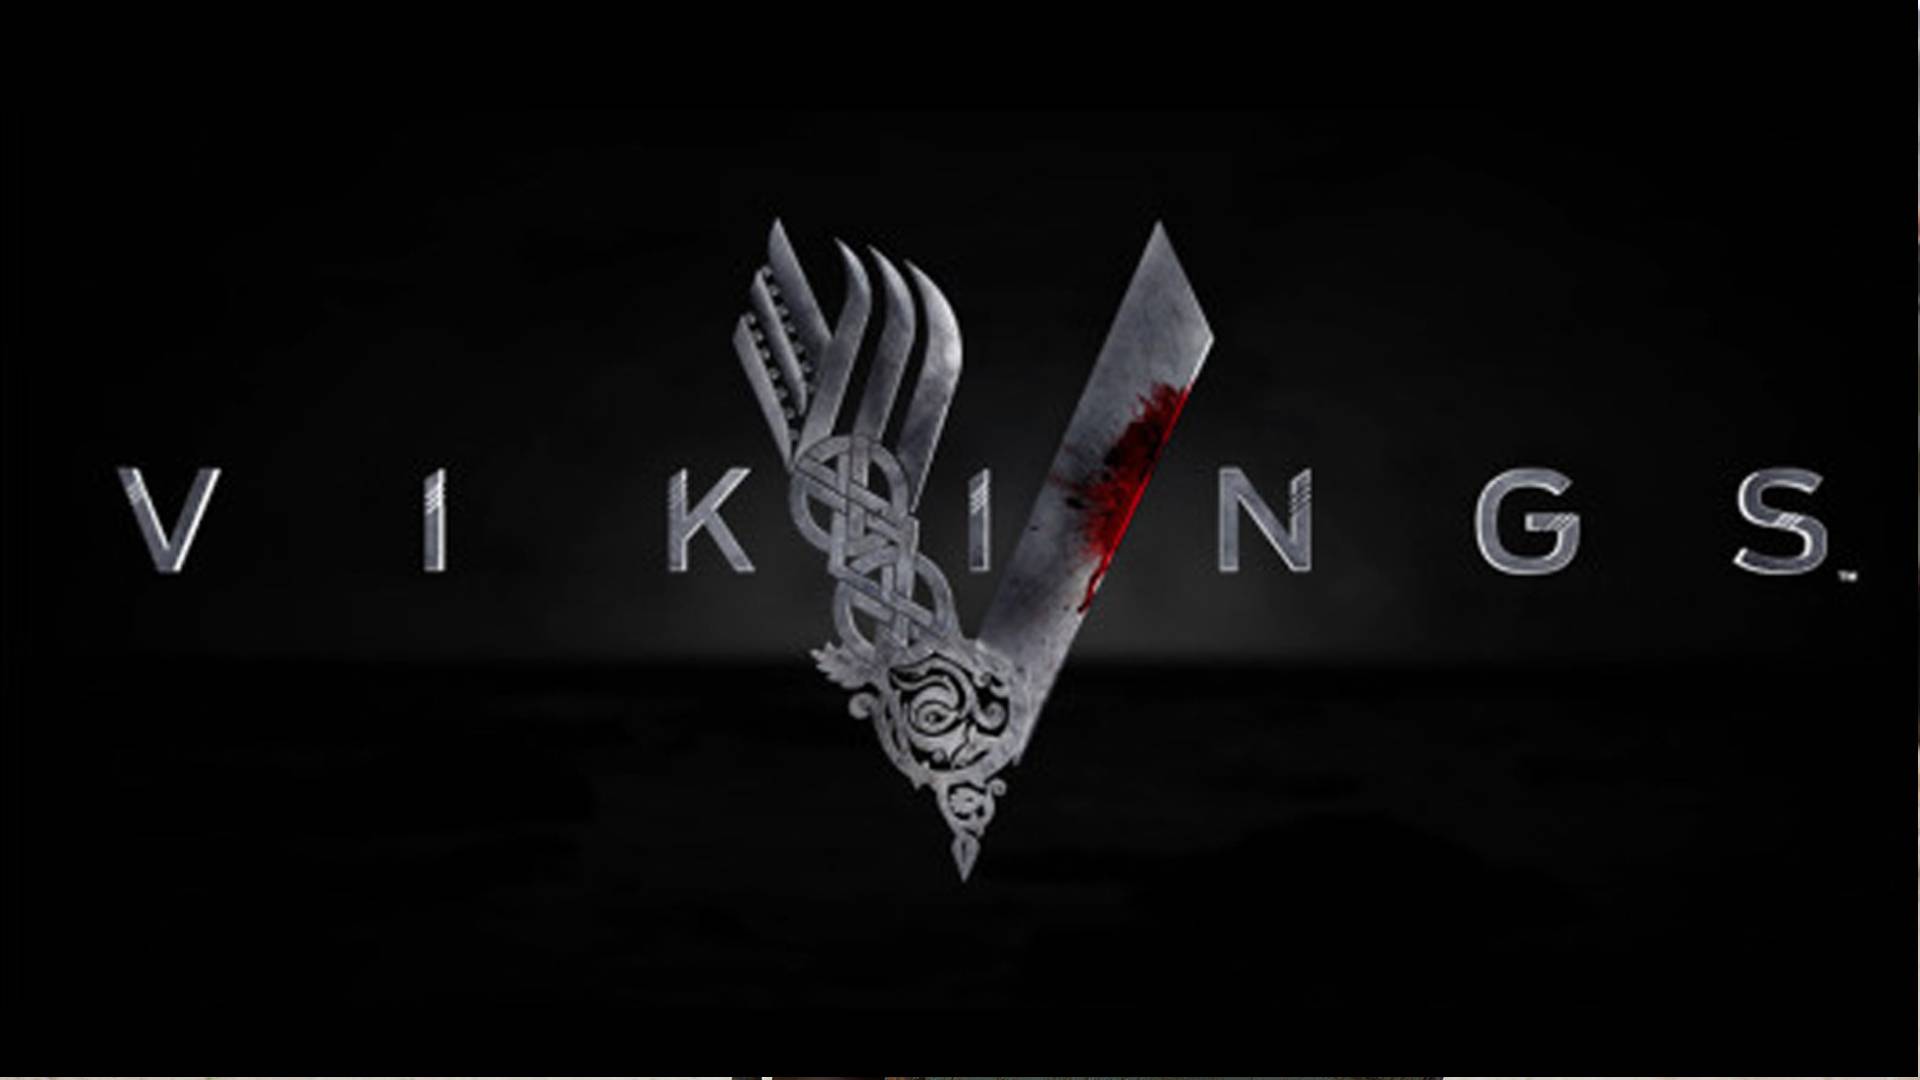 Vikings Logo On Black A Backdrop Of The Sea